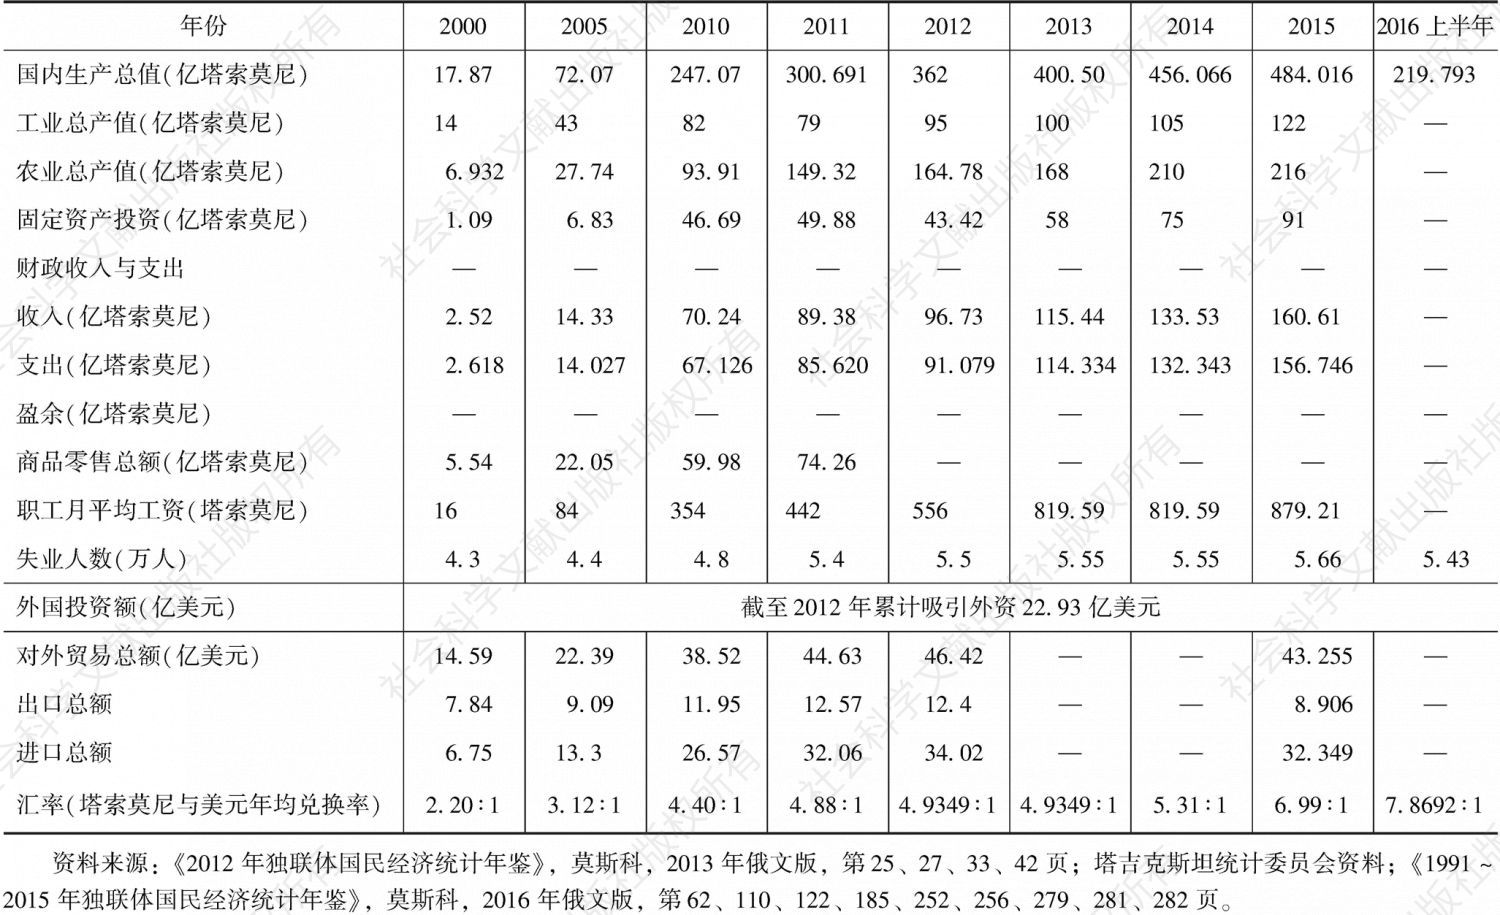 表4-4 2000～2016年塔吉克斯坦主要社会经济指标（绝对值）